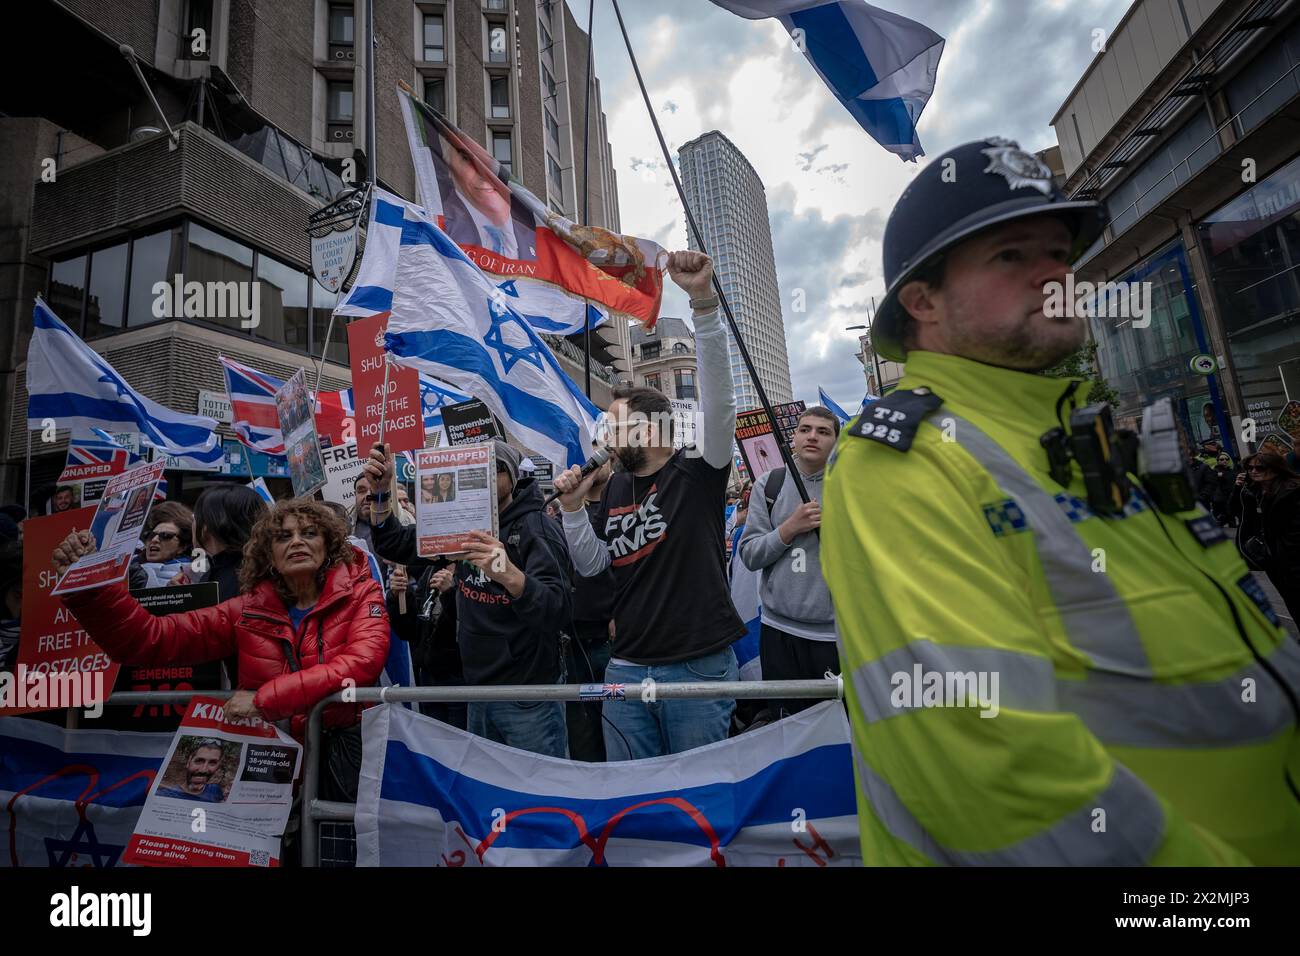 Les partisans pro-israéliens organisent une contre-manifestation contre les partisans pro-palestiniens qui manifestent près de la banque Barclays sur Tottenham court Road, Londres, Royaume-Uni. Banque D'Images